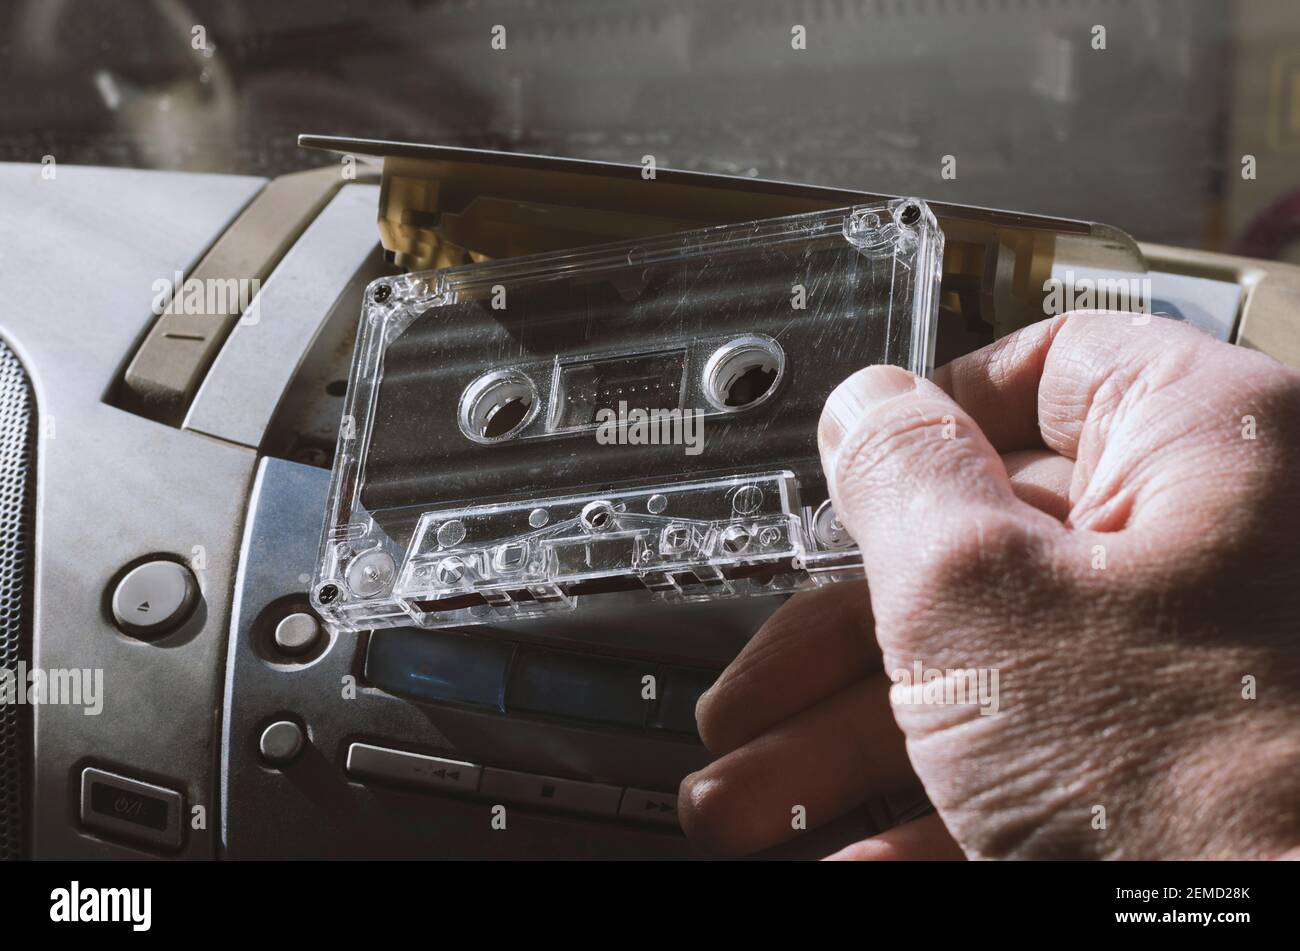 La cinta de audio se inserta en una grabadora de cintas estéreo con los símbolos ampliamente utilizados sin marca comercial Foto de stock